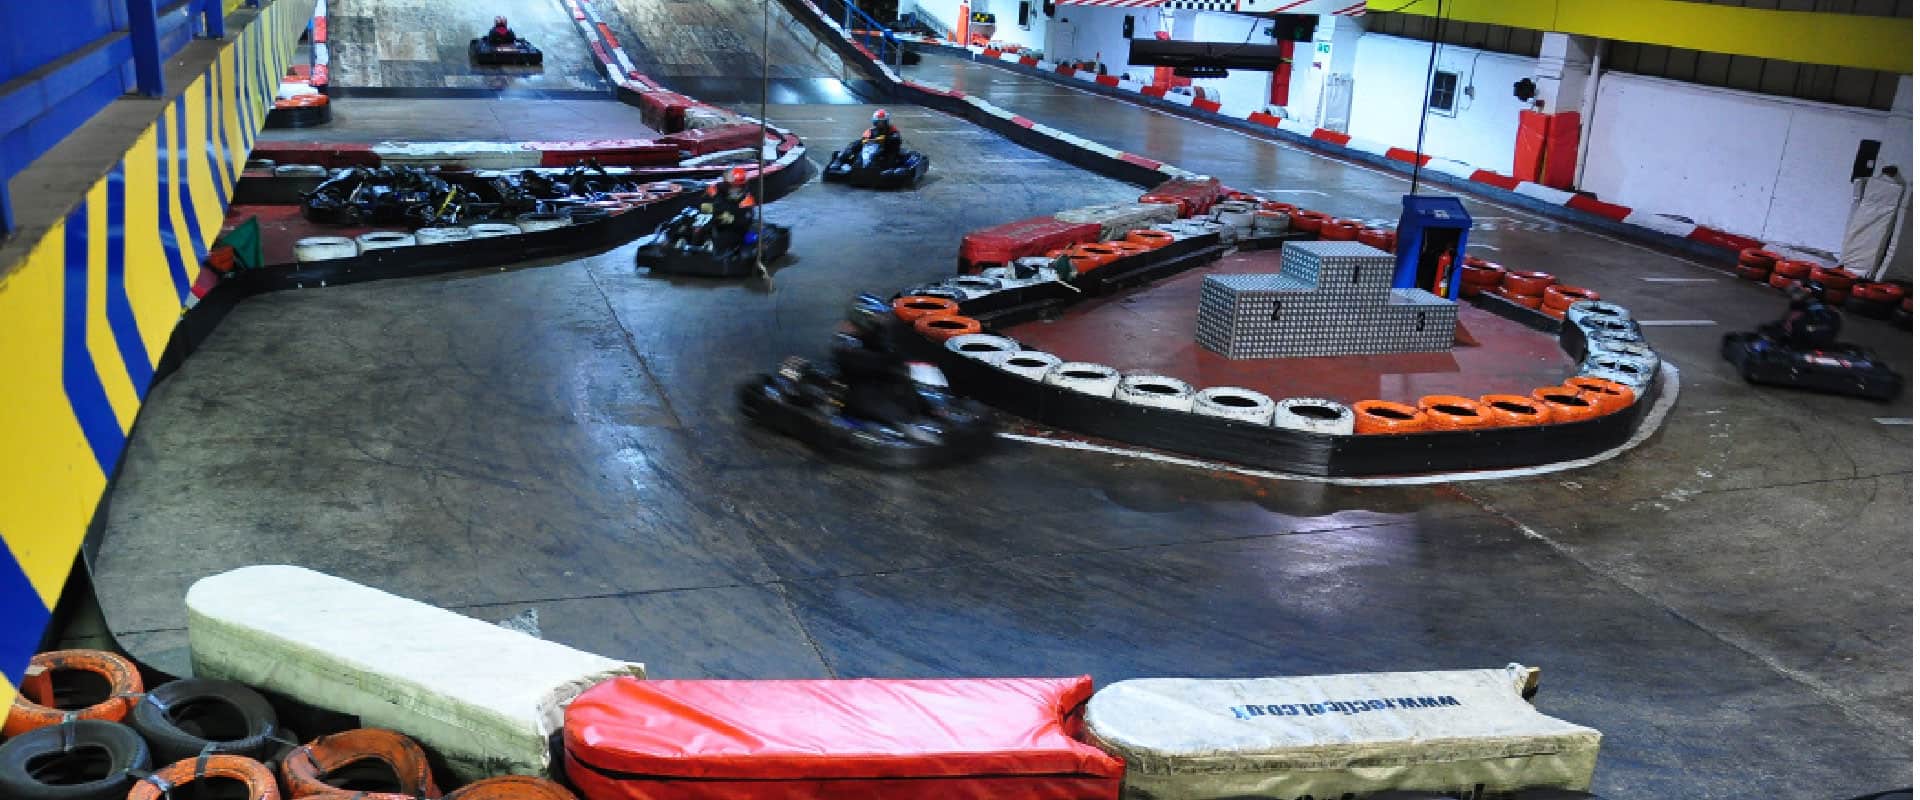 Anglia Indoor Kart Racing in UK